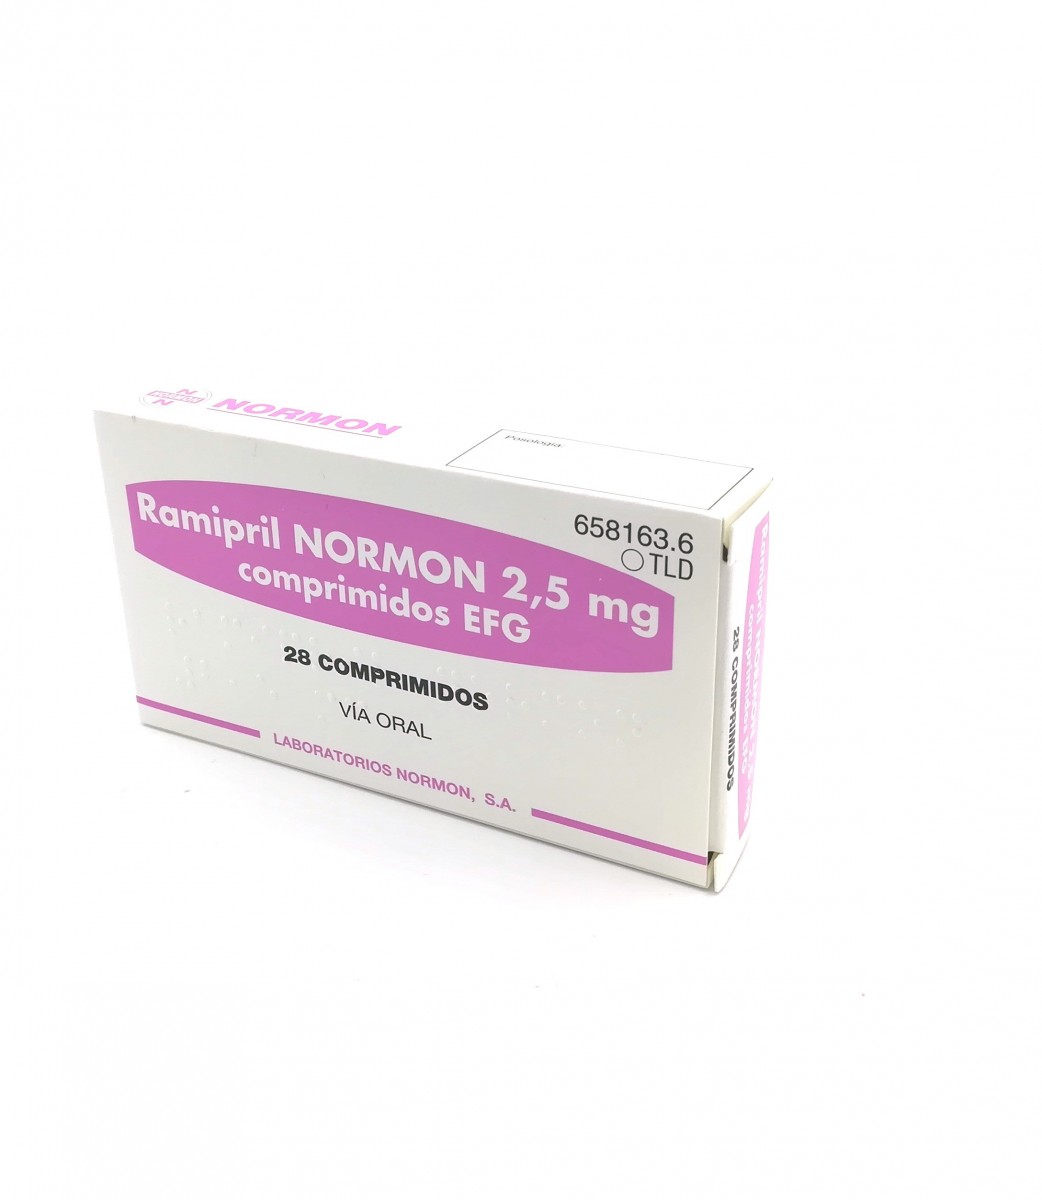 RAMIPRIL NORMON 2,5 mg COMPRIMIDOS EFG, 500 comprimidos fotografía del envase.